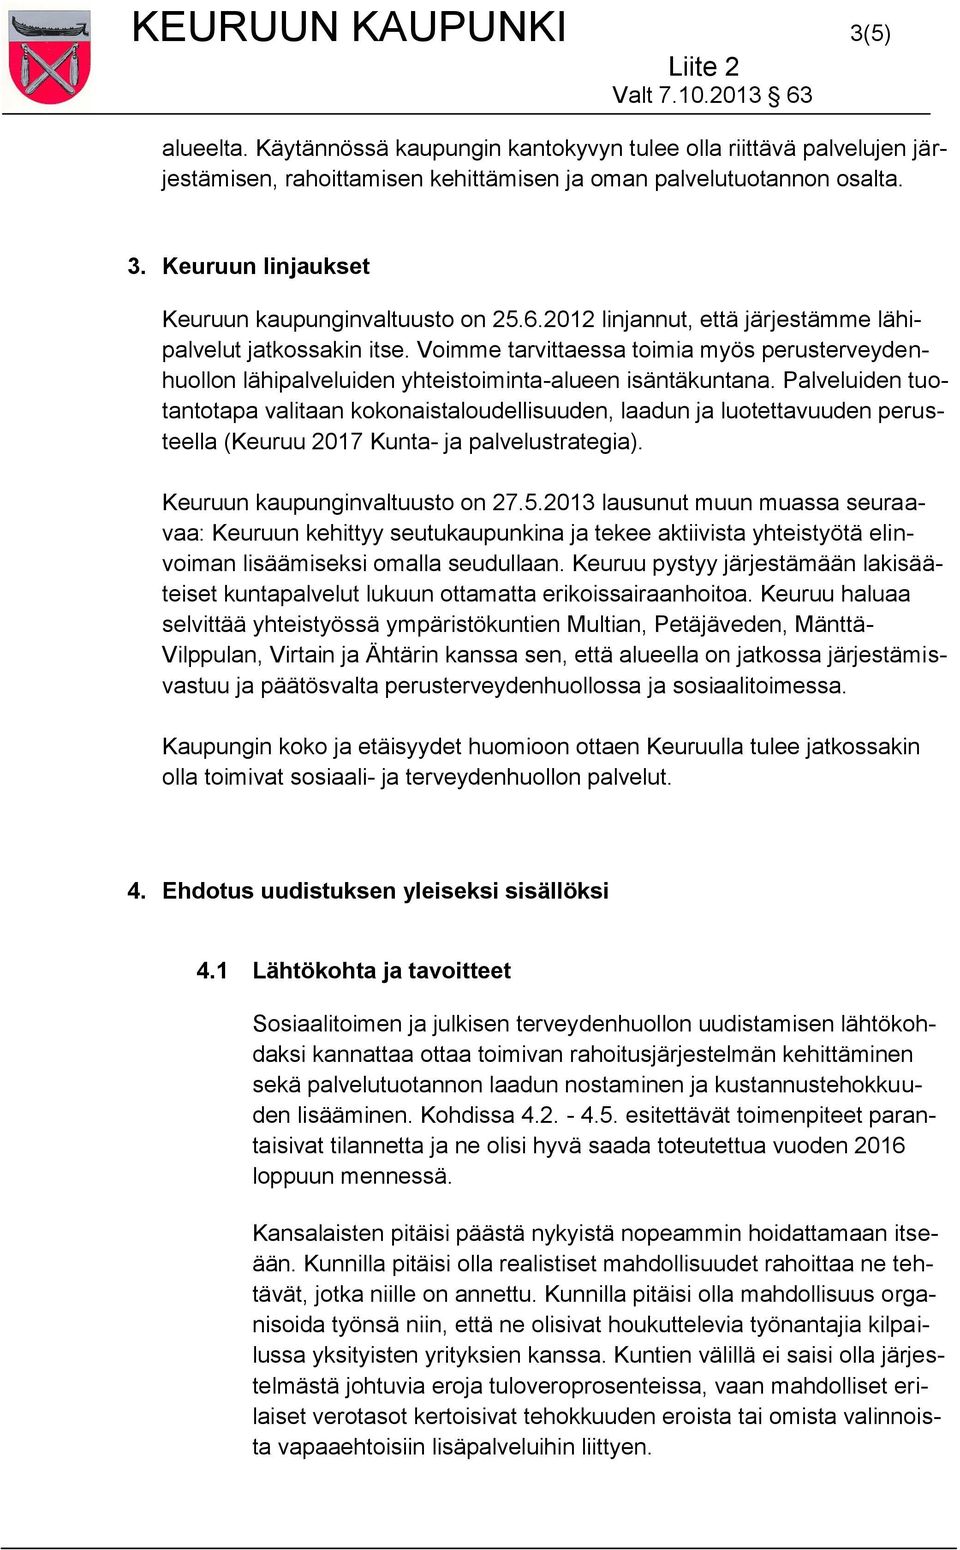 Palveluiden tuotantotapa valitaan kokonaistaloudellisuuden, laadun ja luotettavuuden perusteella (Keuruu 2017 Kunta- ja palvelustrategia). Keuruun kaupunginvaltuusto on 27.5.